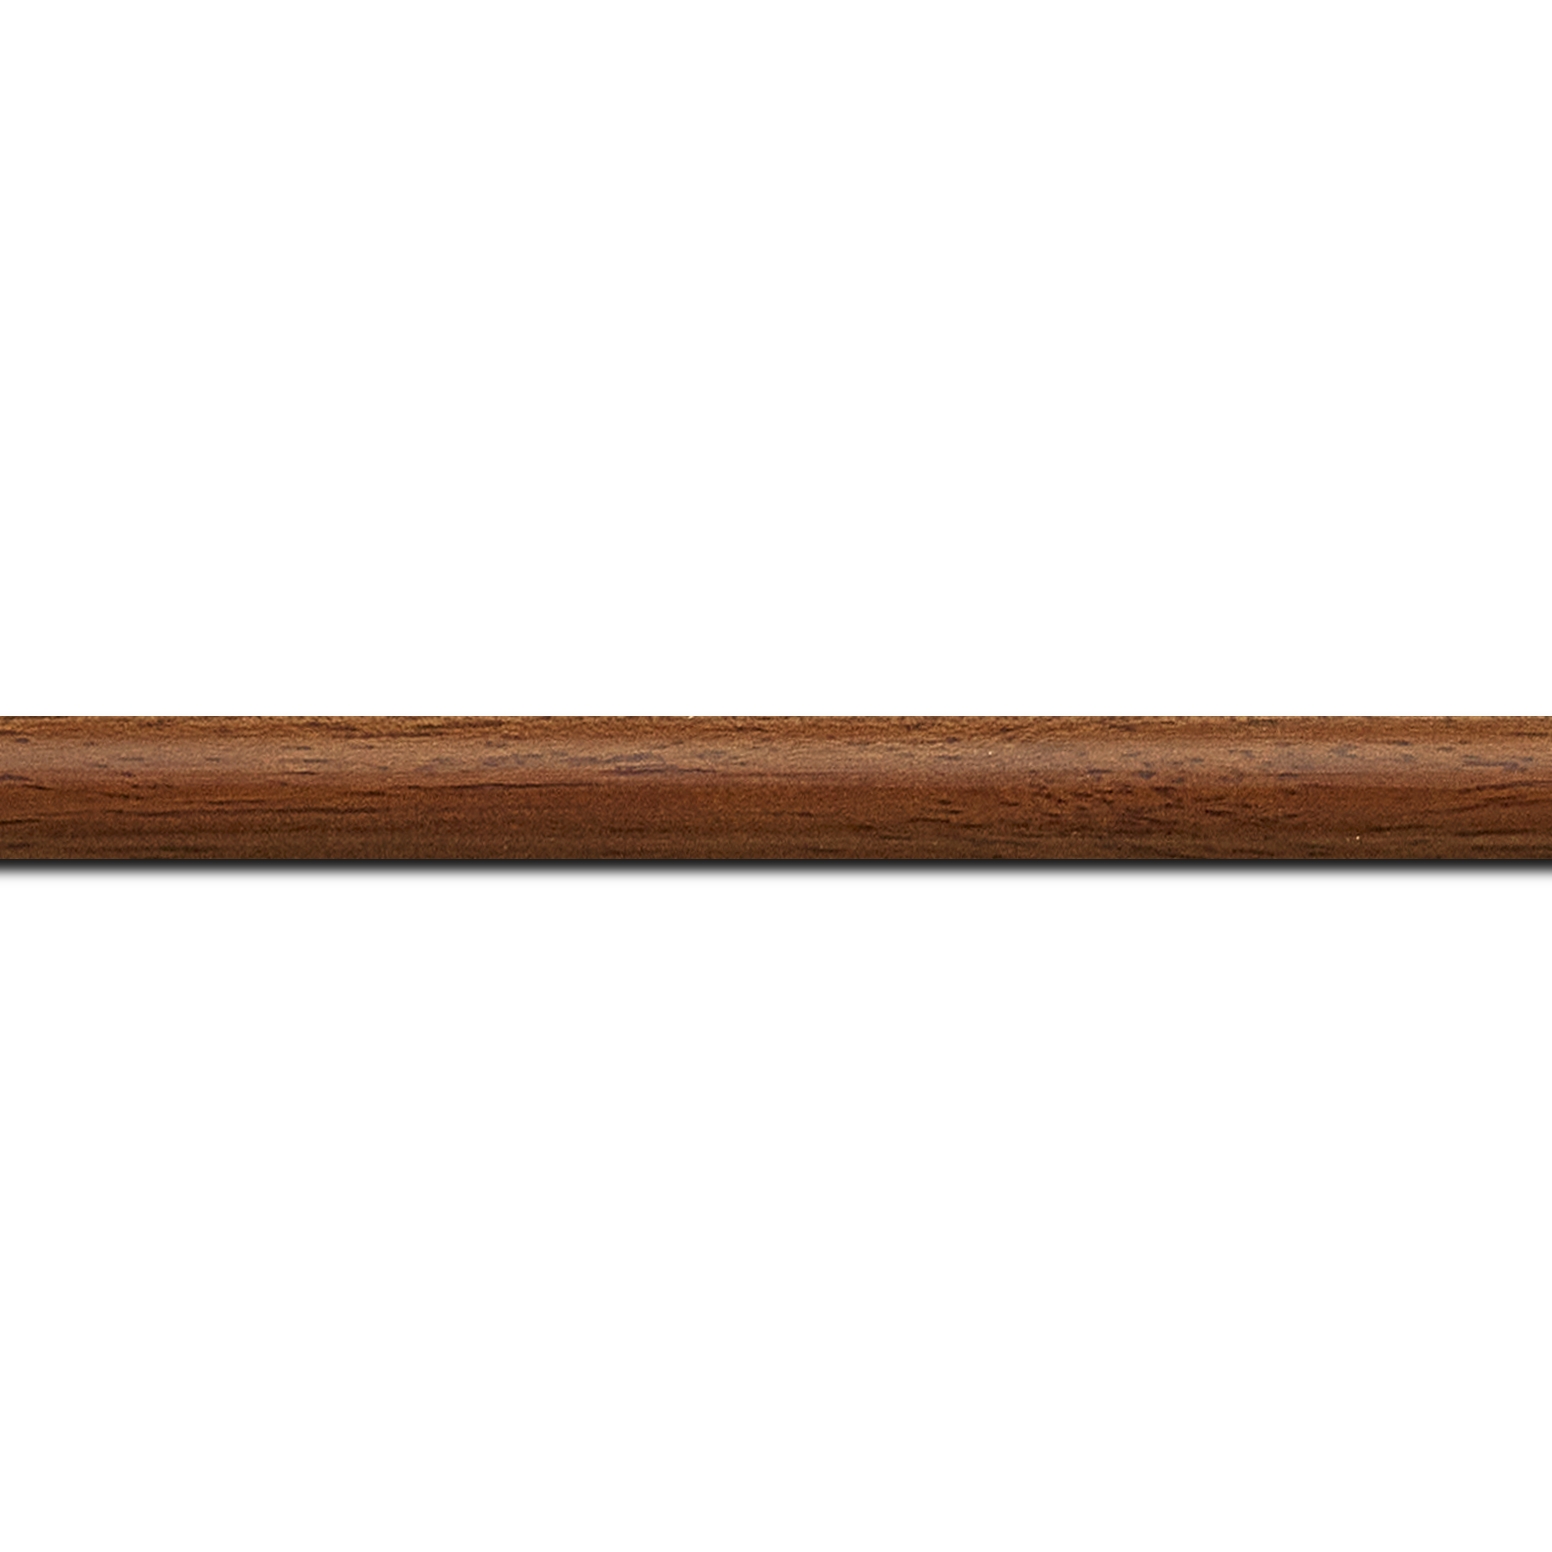 Baguette longueur 1.40m bois profil demi rond largeur 1.5cm couleur marron ton bois extérieur ébène